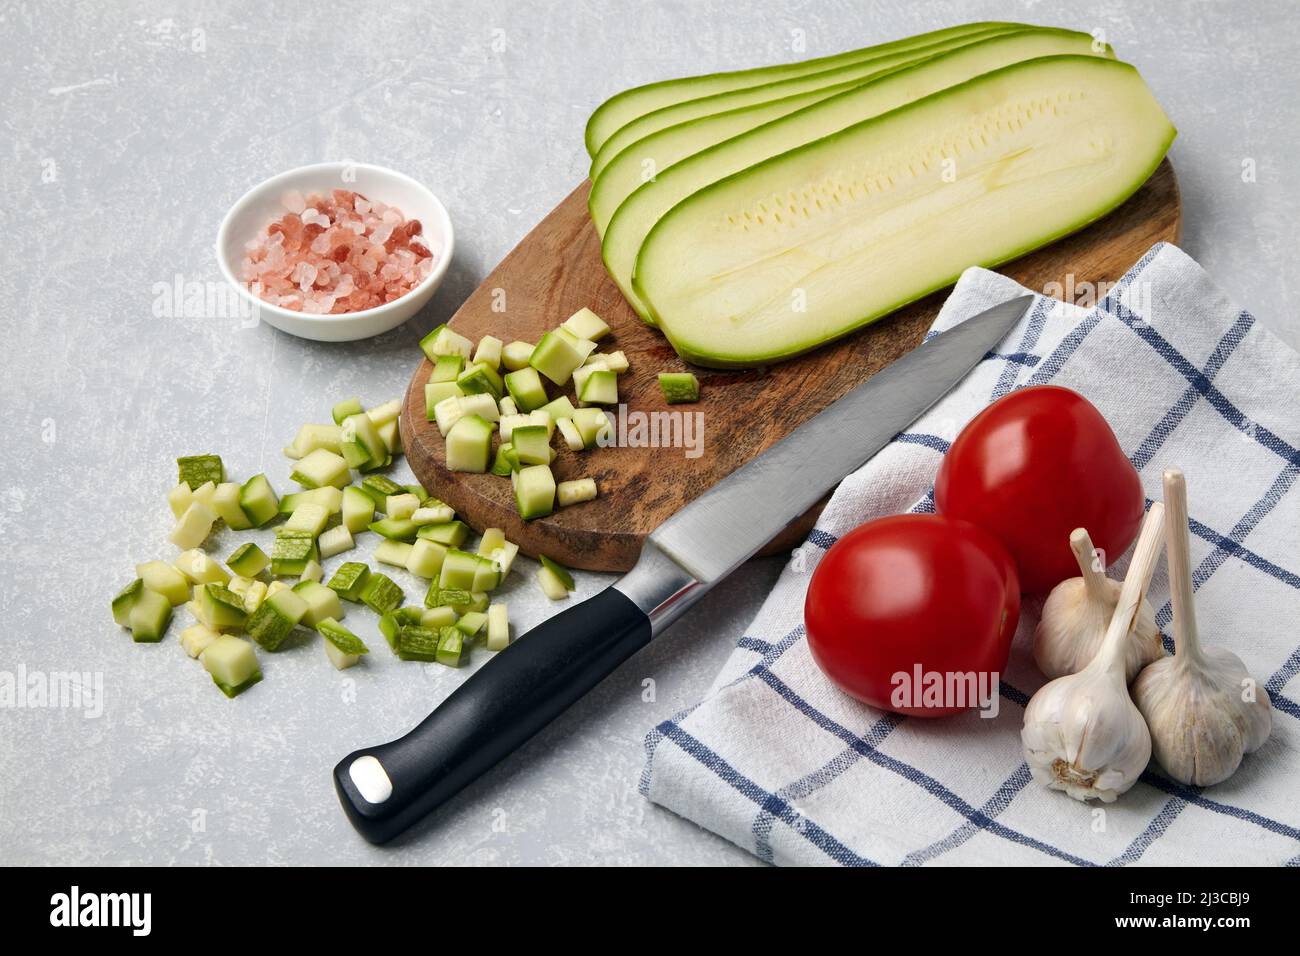 Affettato le verdure zucchine su un tagliere di legno, pomodori, aglio, sale rosa e tovagliolo su un tavolo chiaro di cemento Foto Stock